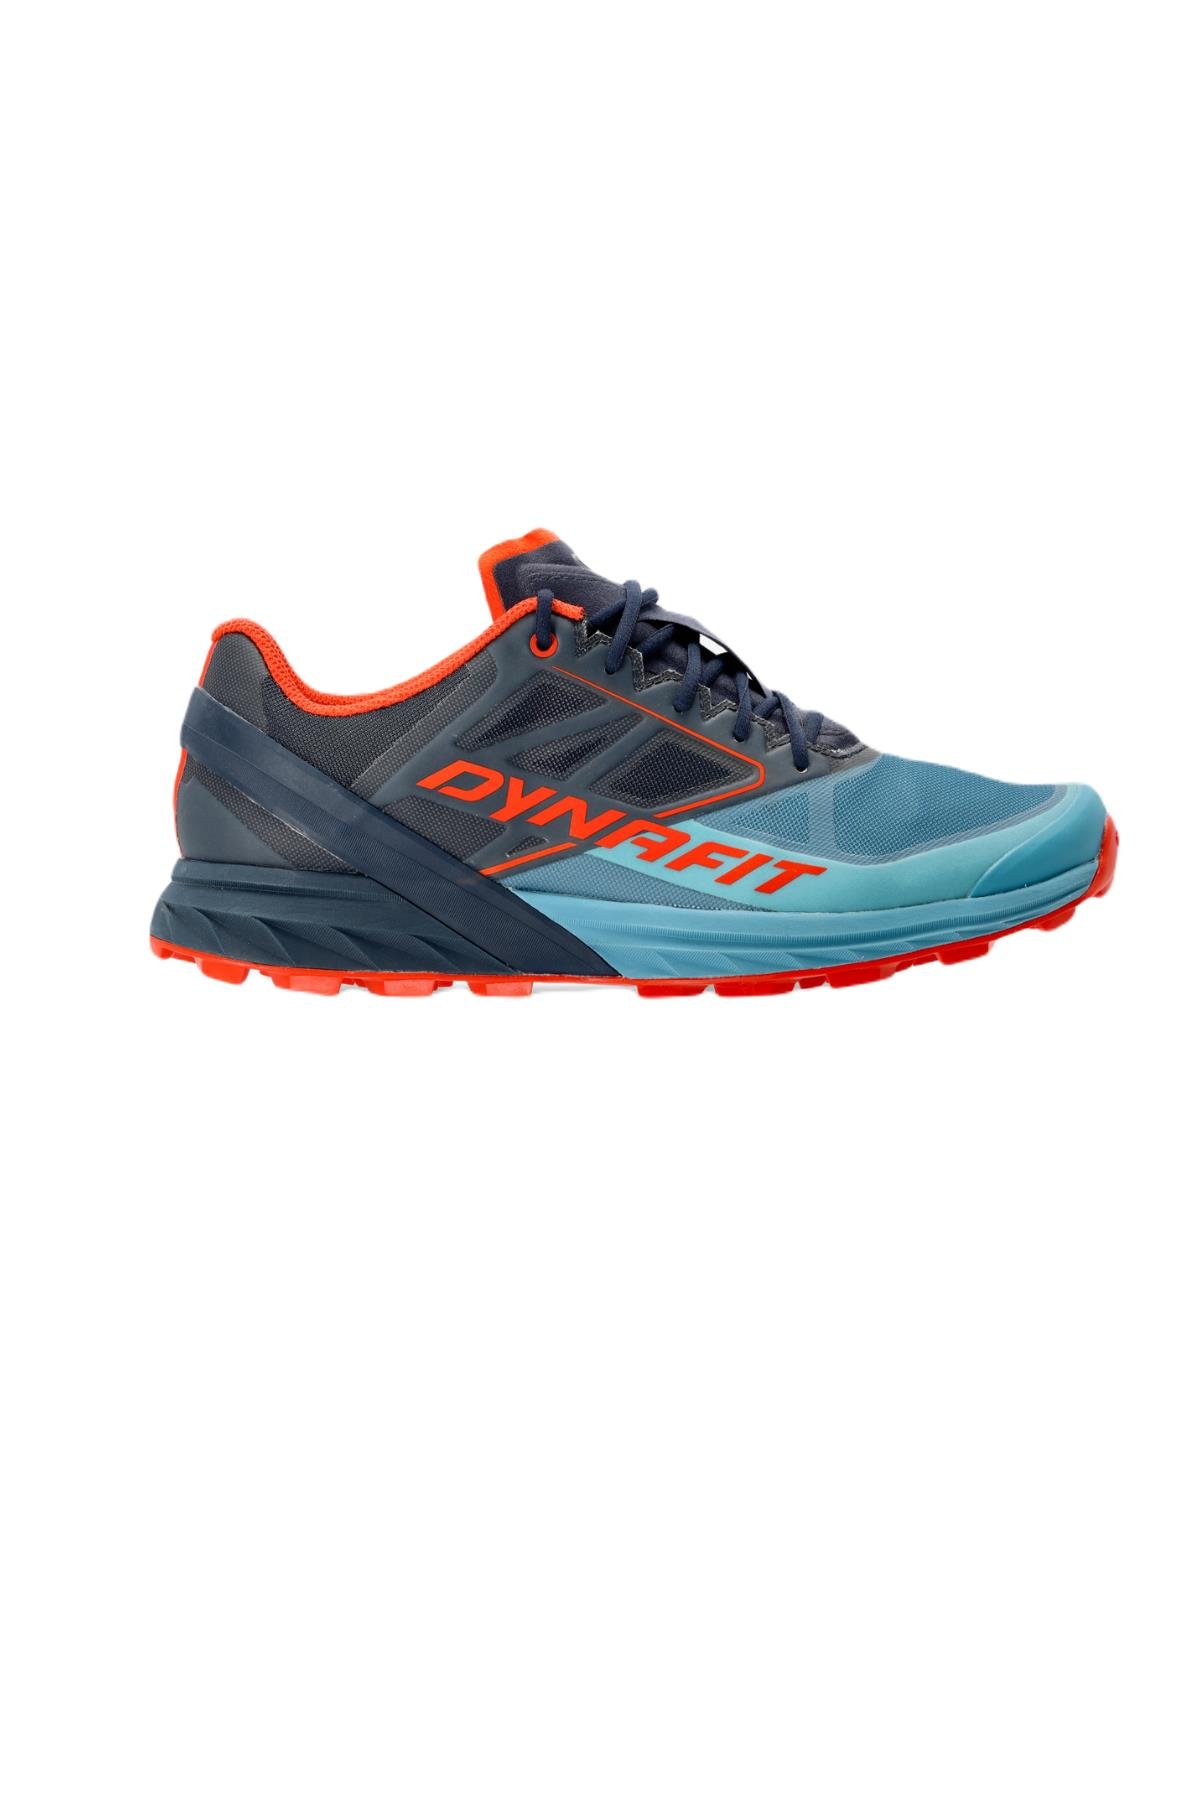 Dynafit Erkek Alpine Koşu Ayakkabısı 08-0000064064stblur